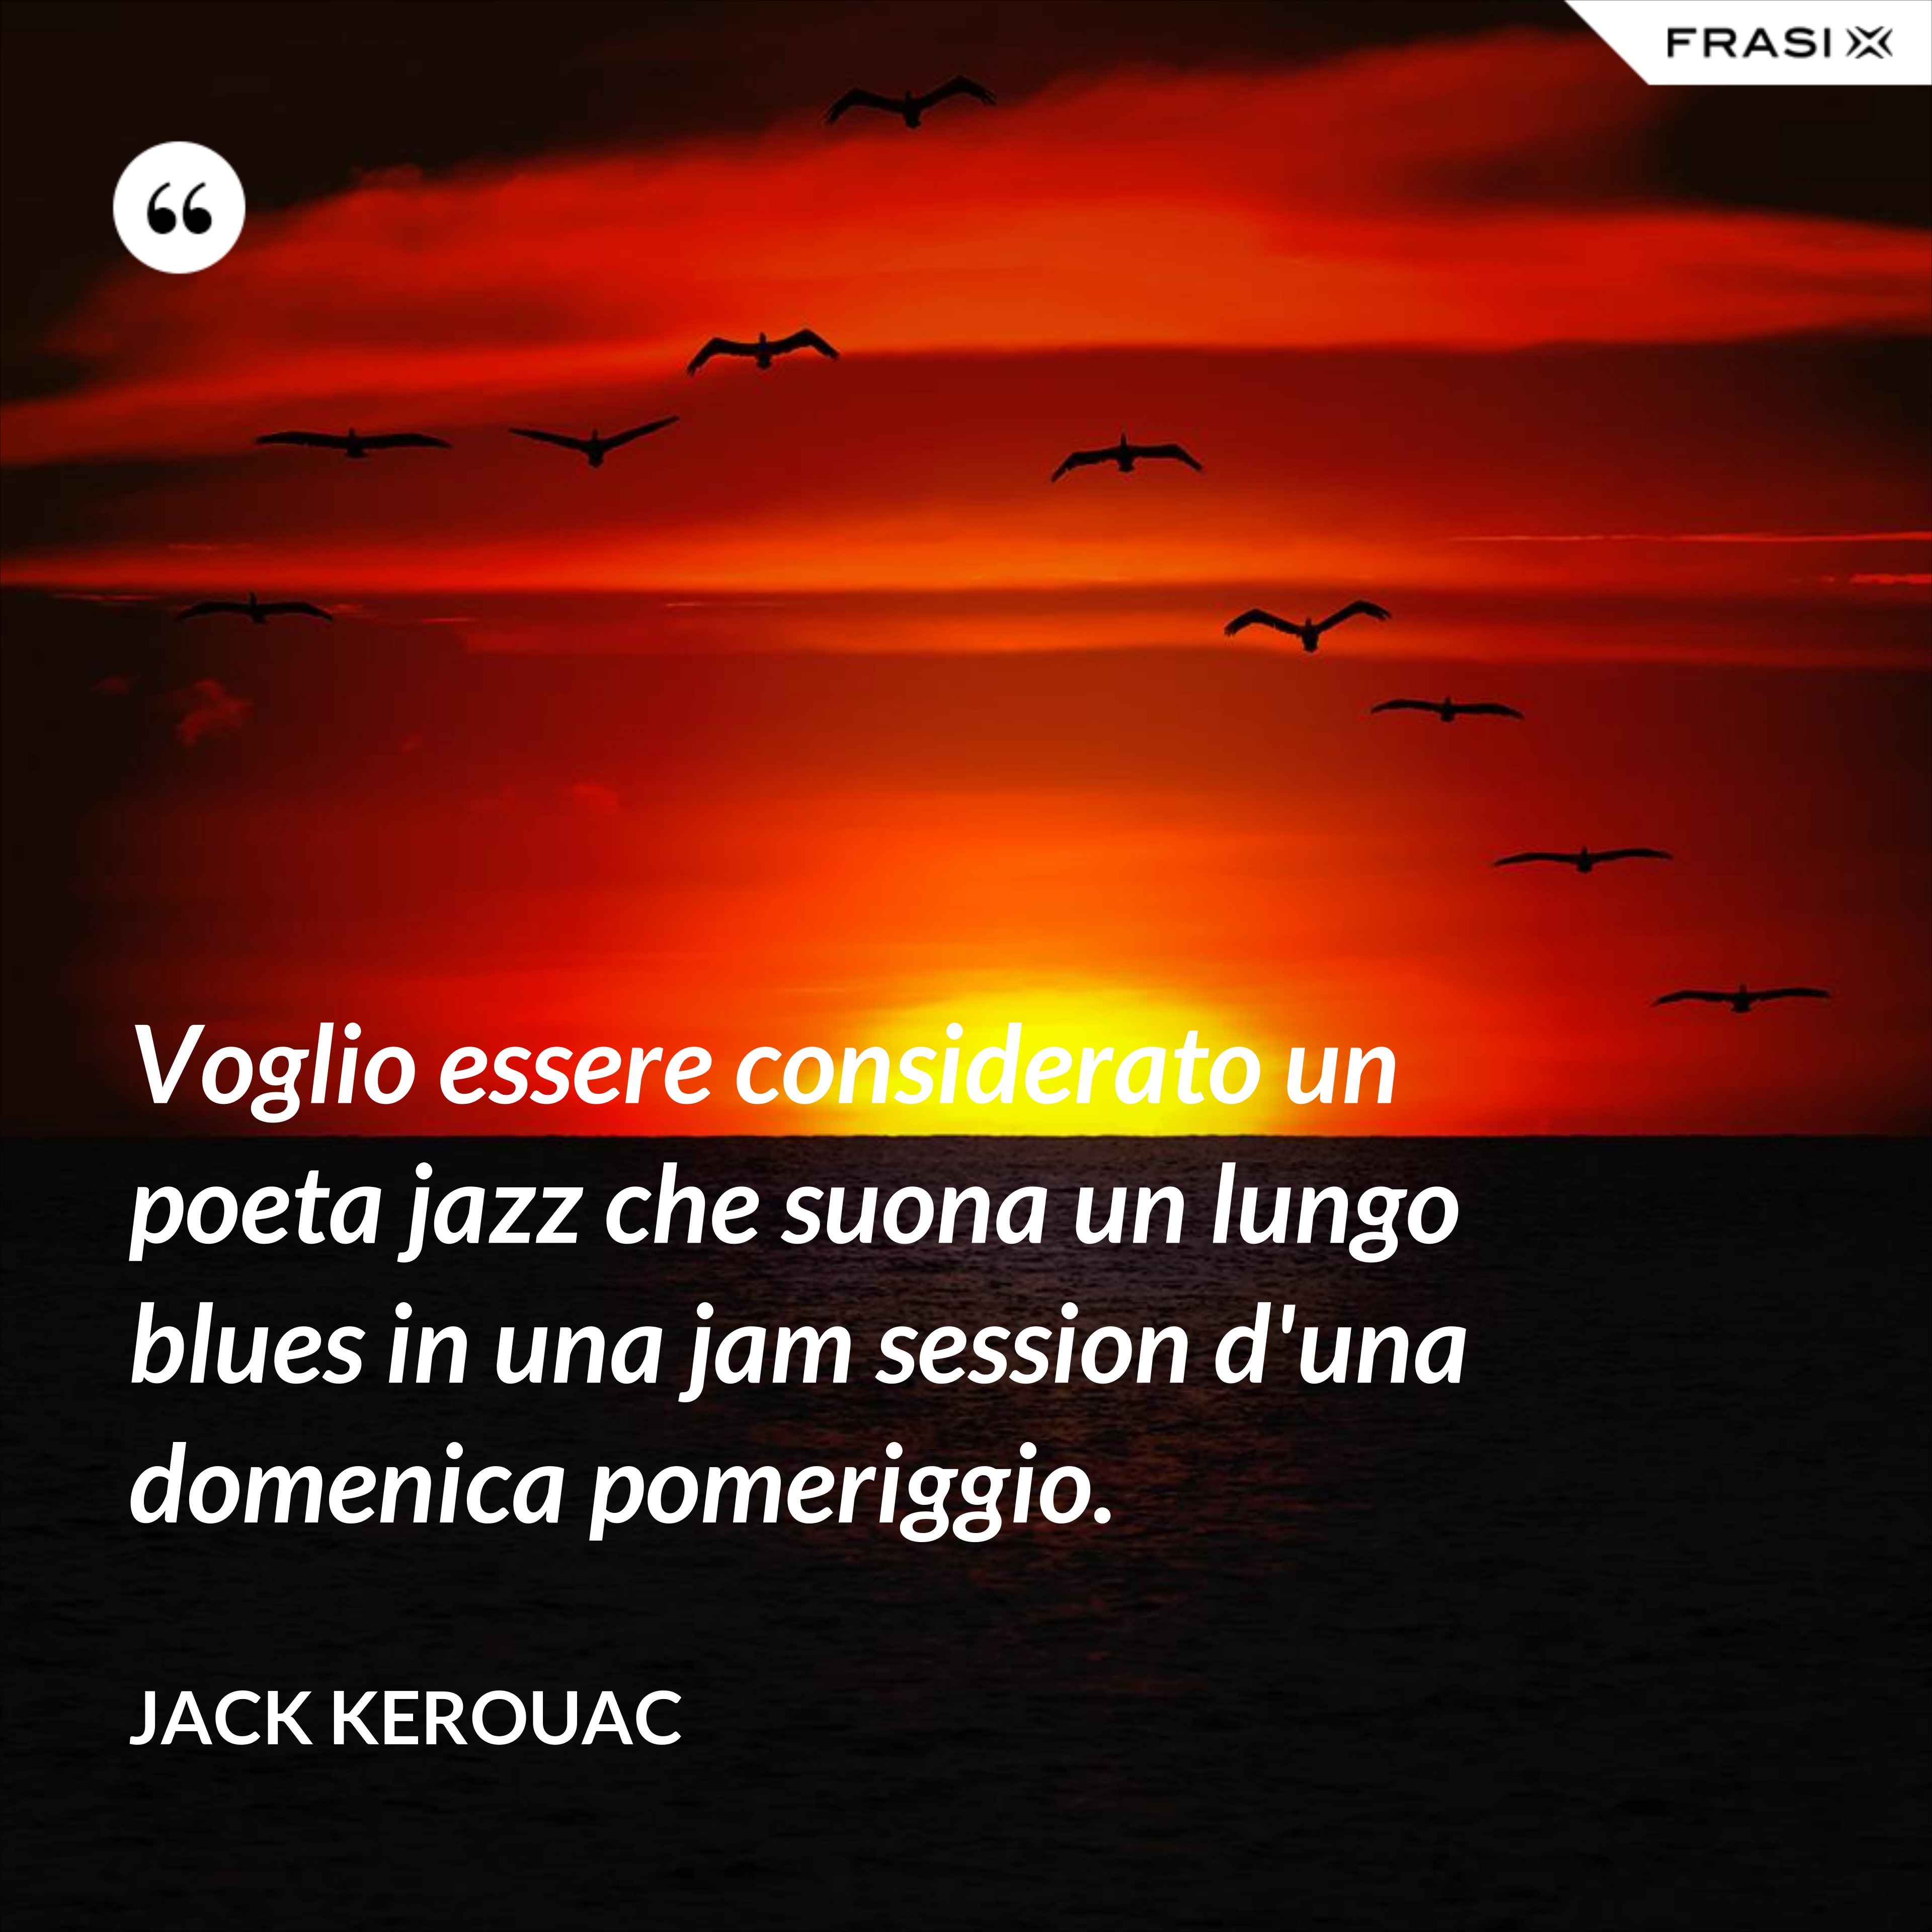 Voglio essere considerato un poeta jazz che suona un lungo blues in una jam session d'una domenica pomeriggio. - Jack Kerouac